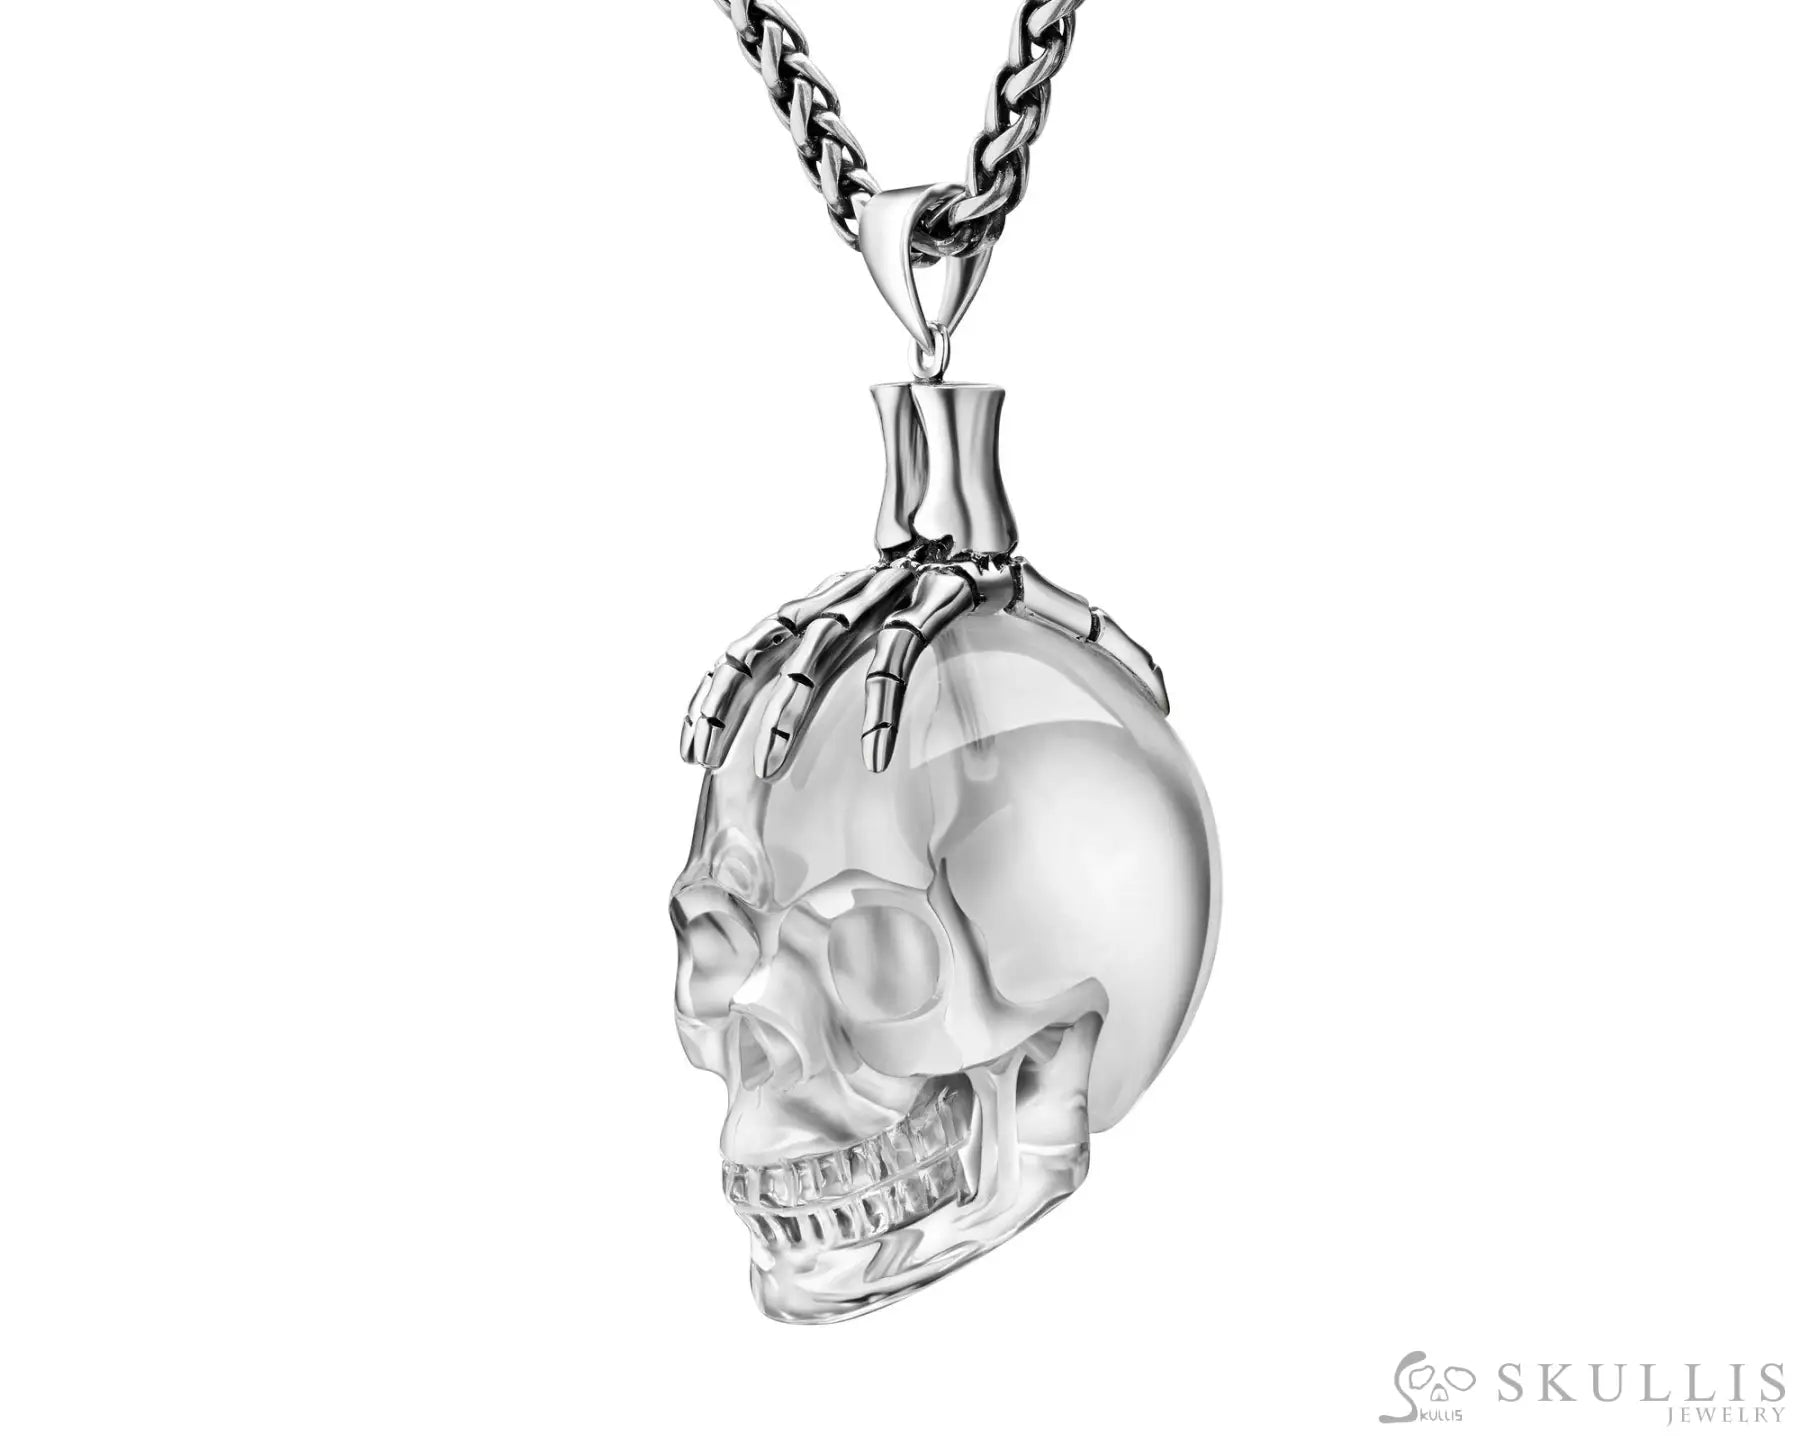 Gem Skull Pendant Necklace Of Quartz Rock Crystal Carved Skull With Skeleton Hand In 925